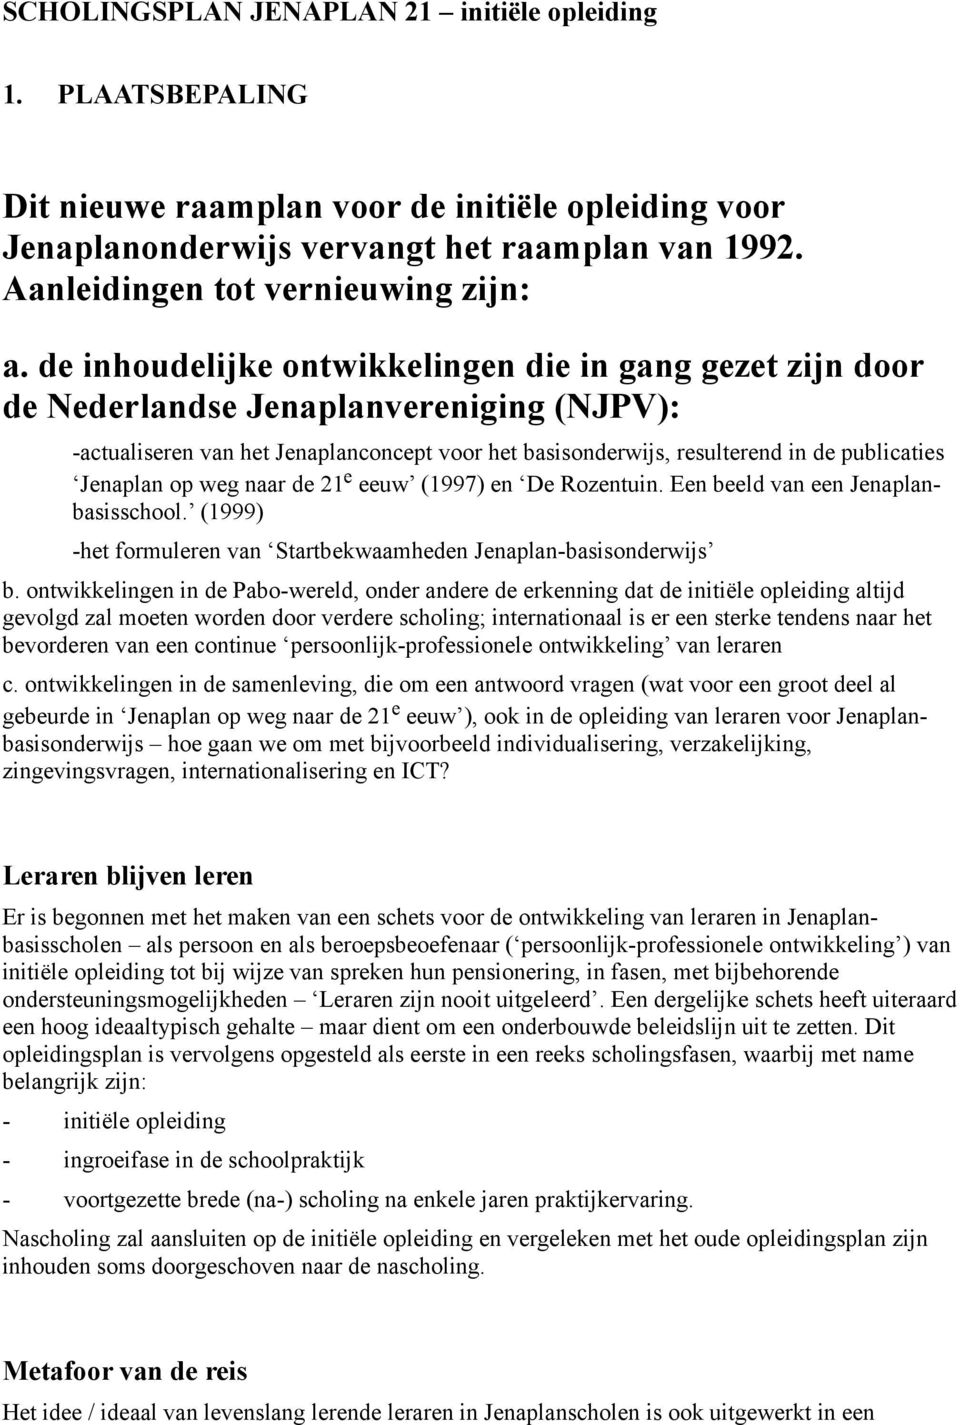 de inhoudelijke ontwikkelingen die in gang gezet zijn door de Nederlandse Jenaplanvereniging (NJPV): -actualiseren van het Jenaplanconcept voor het basisonderwijs, resulterend in de publicaties